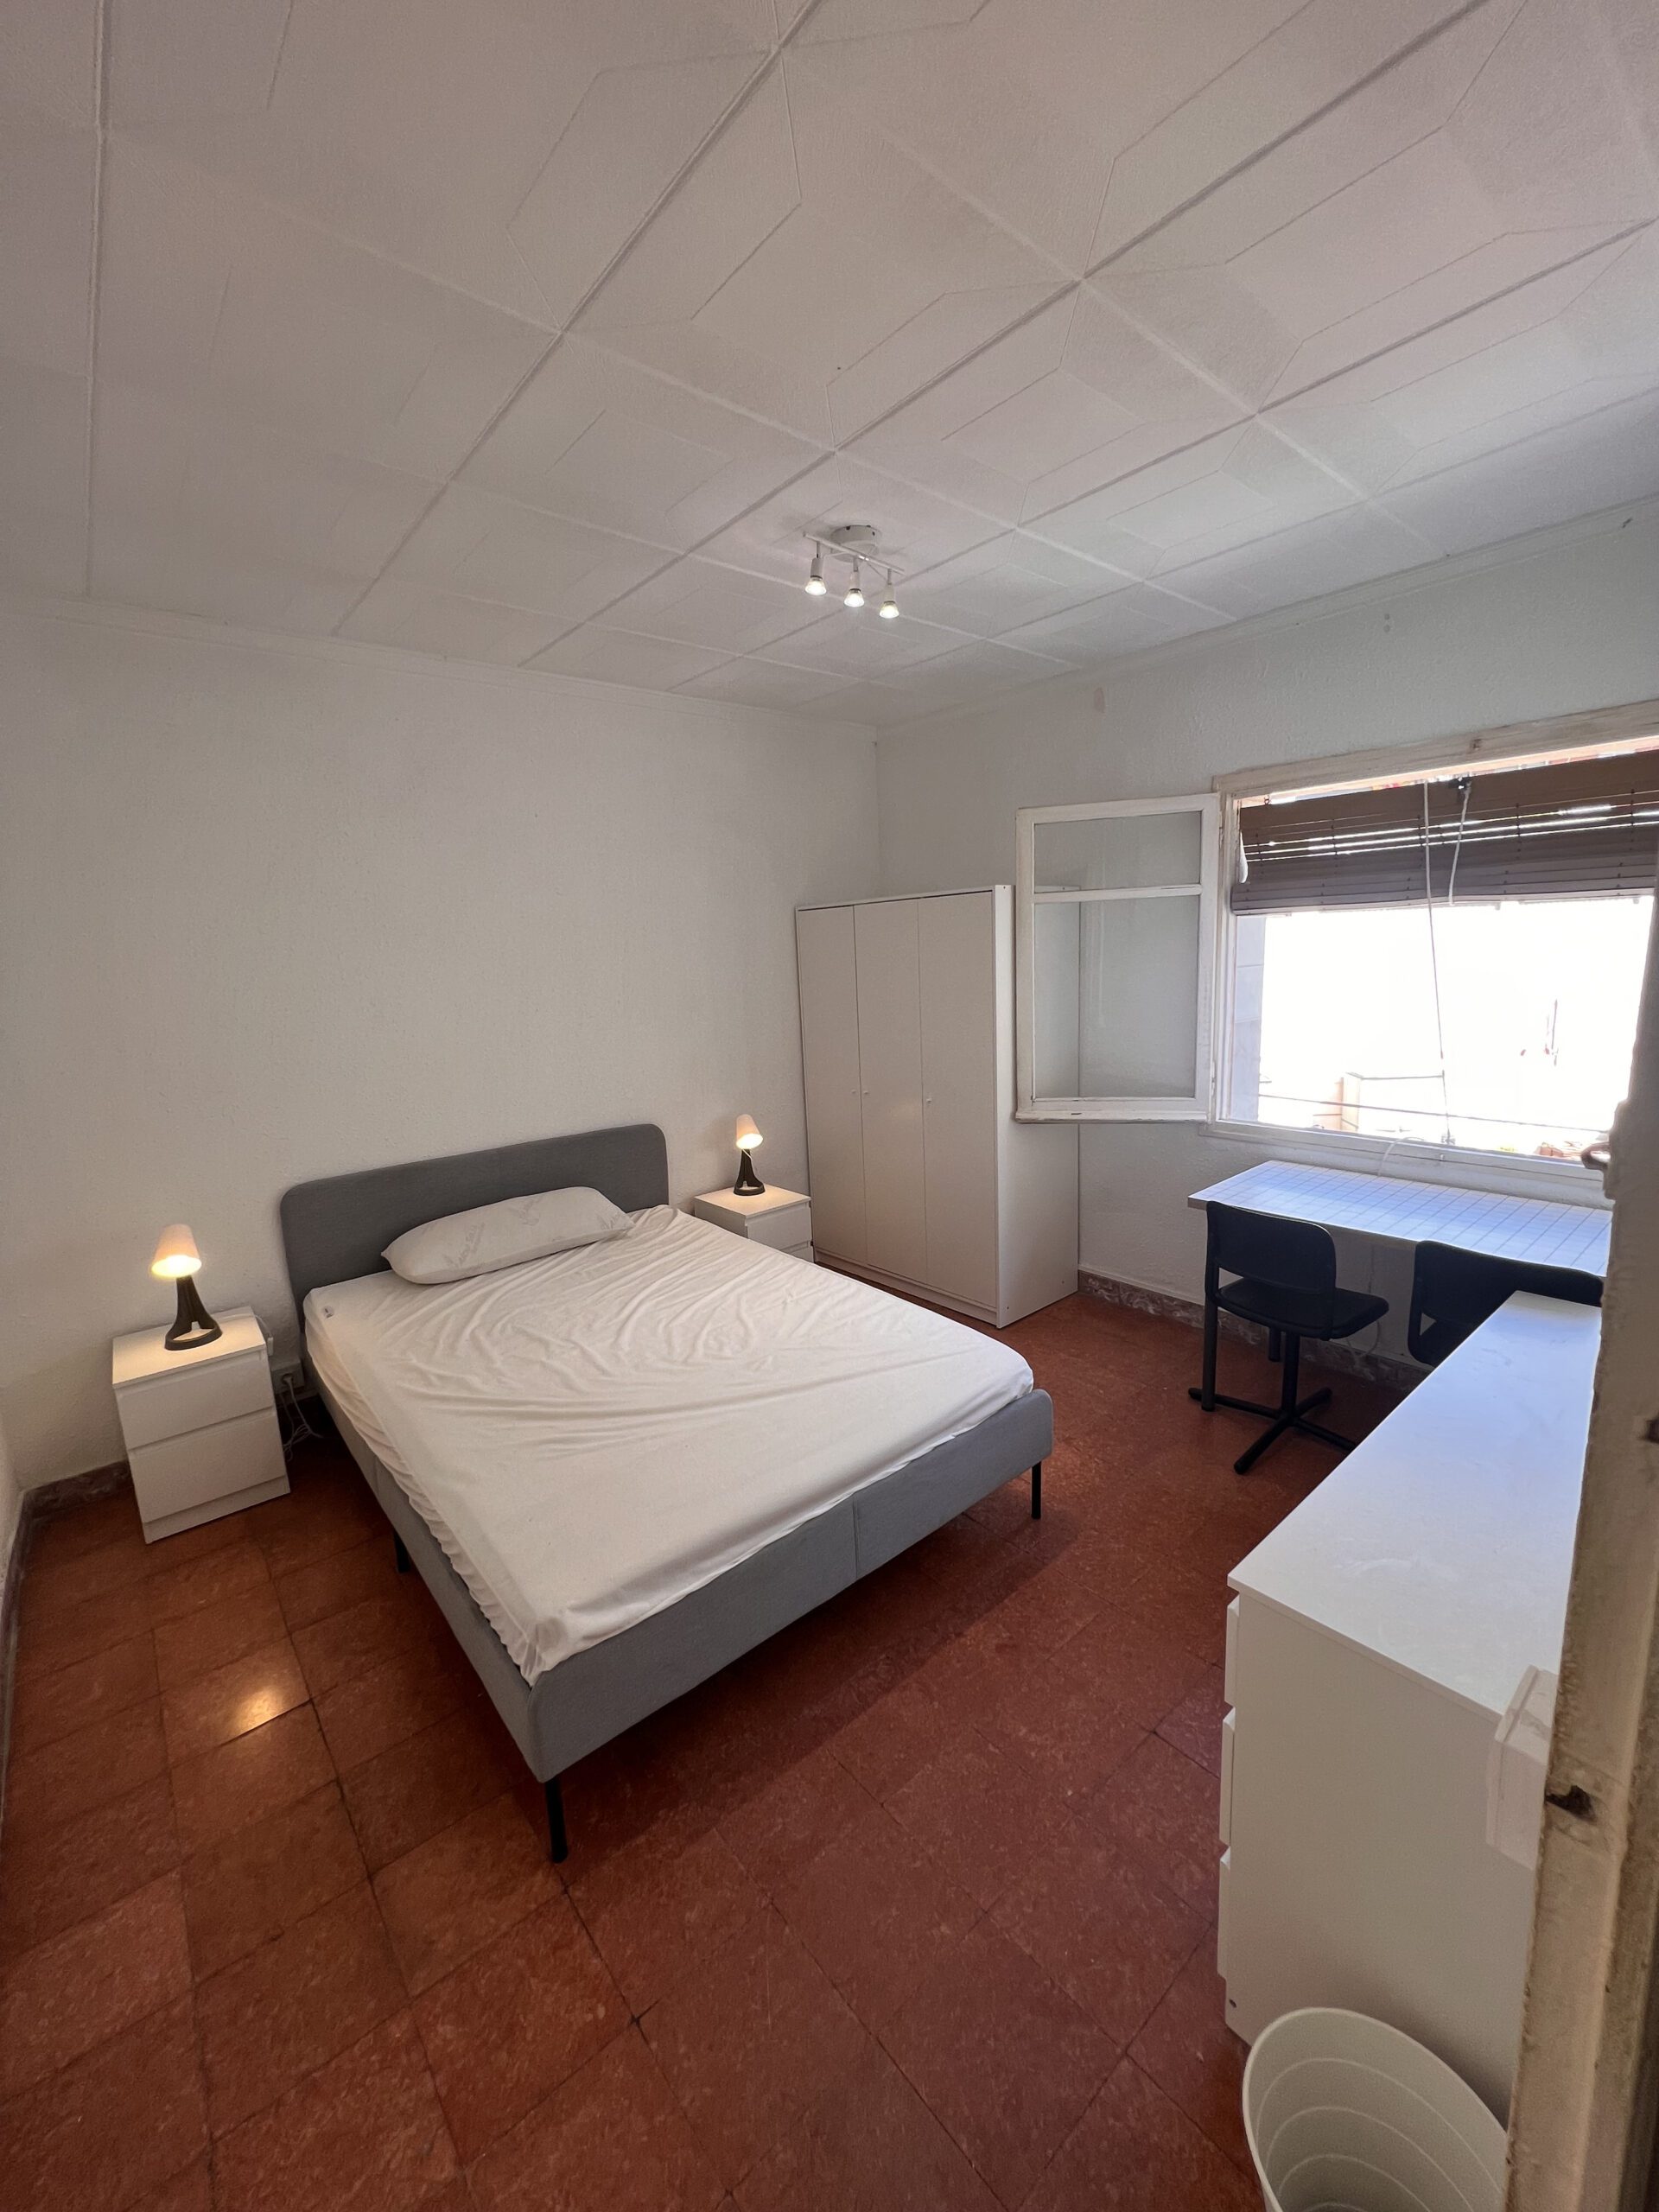 Habitación para parejas en Cartellà. Rooming Concept Alquila tu habitación de forma segura en Barcelona y Madrid con el modelo Rent to Rent